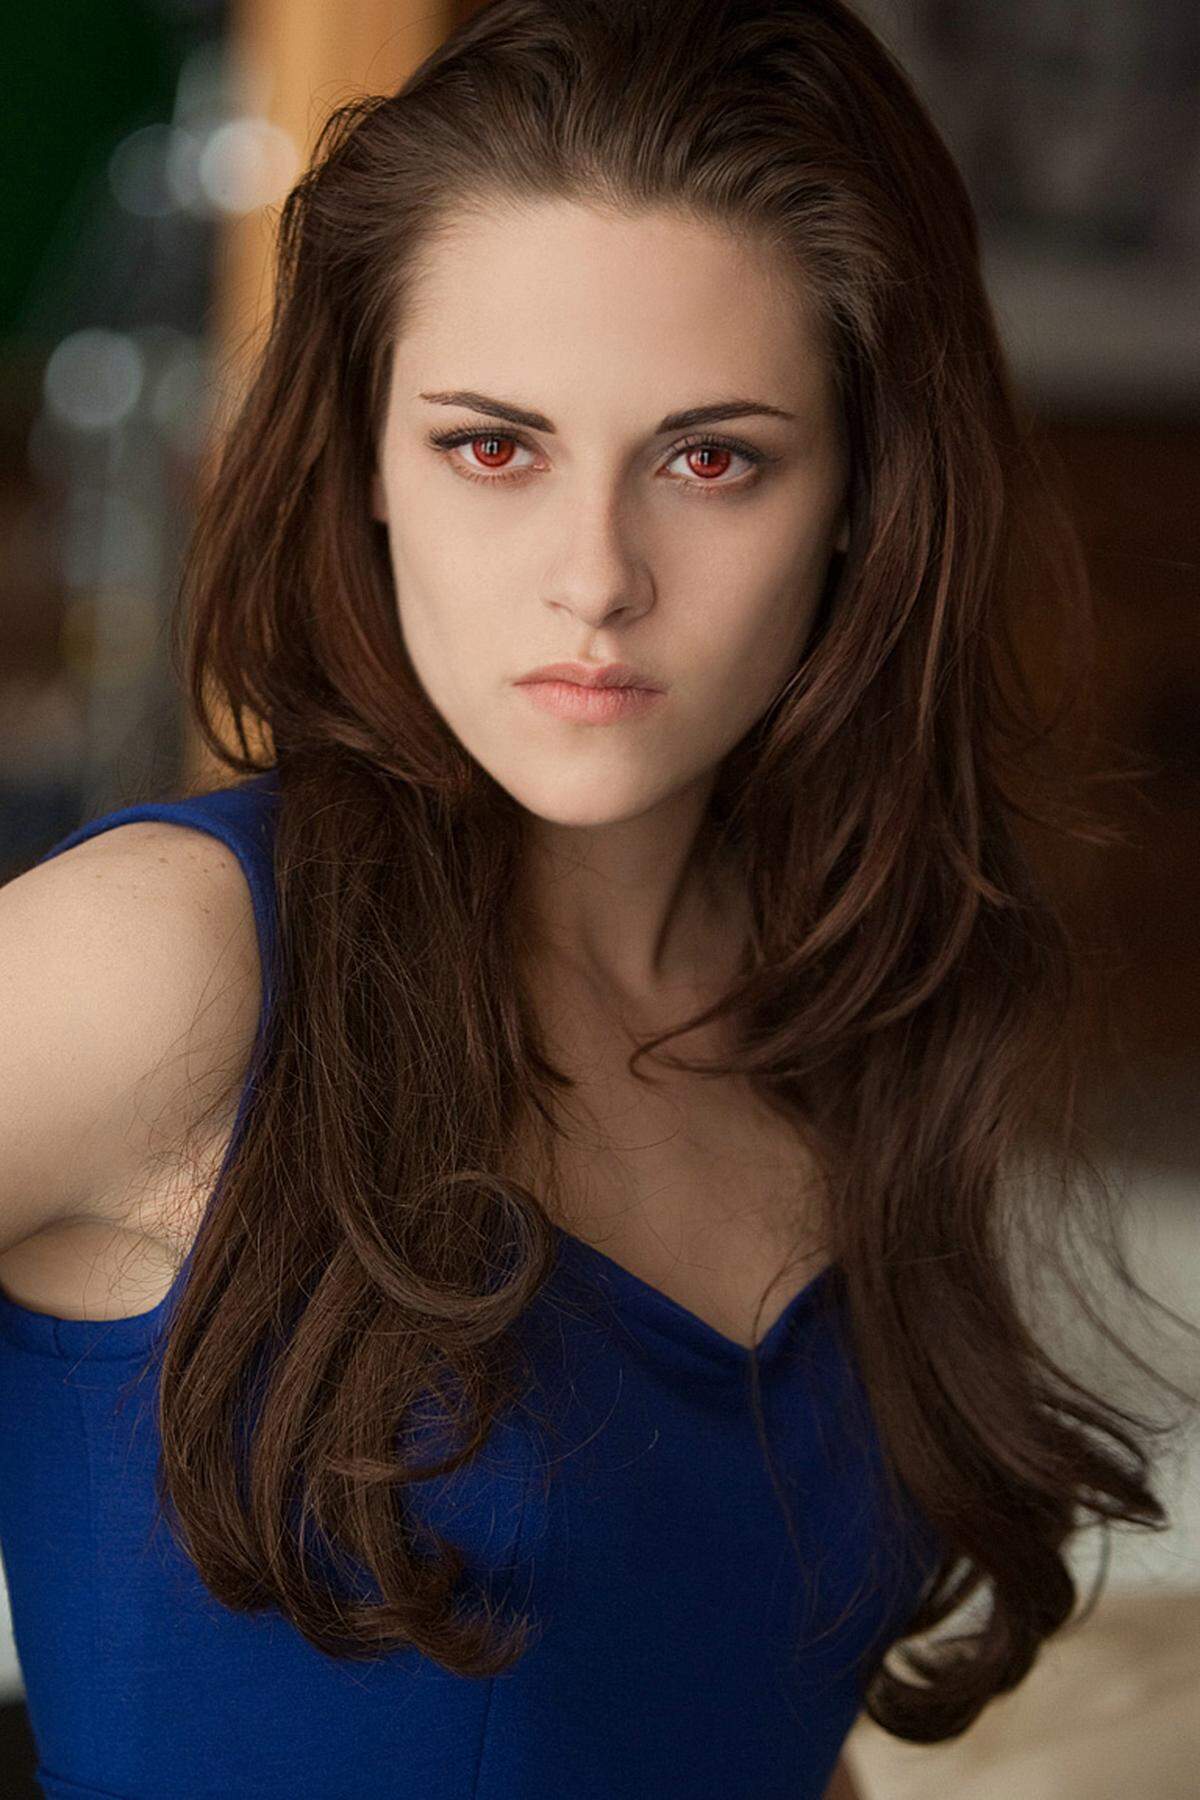 Der Abschluss der "Twilight"-Saga schließt direkt am Vorgänger an. In Film Nummer vier hatte Bella (Kristen Stewart) ihren herzschlaglosen Traumprinzen Edward (Robert Pattinson) geheiratet und war bei der Geburt des gemeinsamen Mensch-Vampir-Hybriden-Babys gestorben sowie wiedergeboren worden. Vampir zu sein ist eine tolle Sache, stellt die frischvermählte Jungmutter zu Beginn von Teil fünf fest: Man sieht super aus, kriegt eine aufregende neue Augenfarbe, sieht alles in Nahaufnahme und/oder Zeitlupe und hat Spaß beim Wild-Herumrennen durch Wälder und Berge. Nicht zu vergessen: Man glitzert in der Sonne.